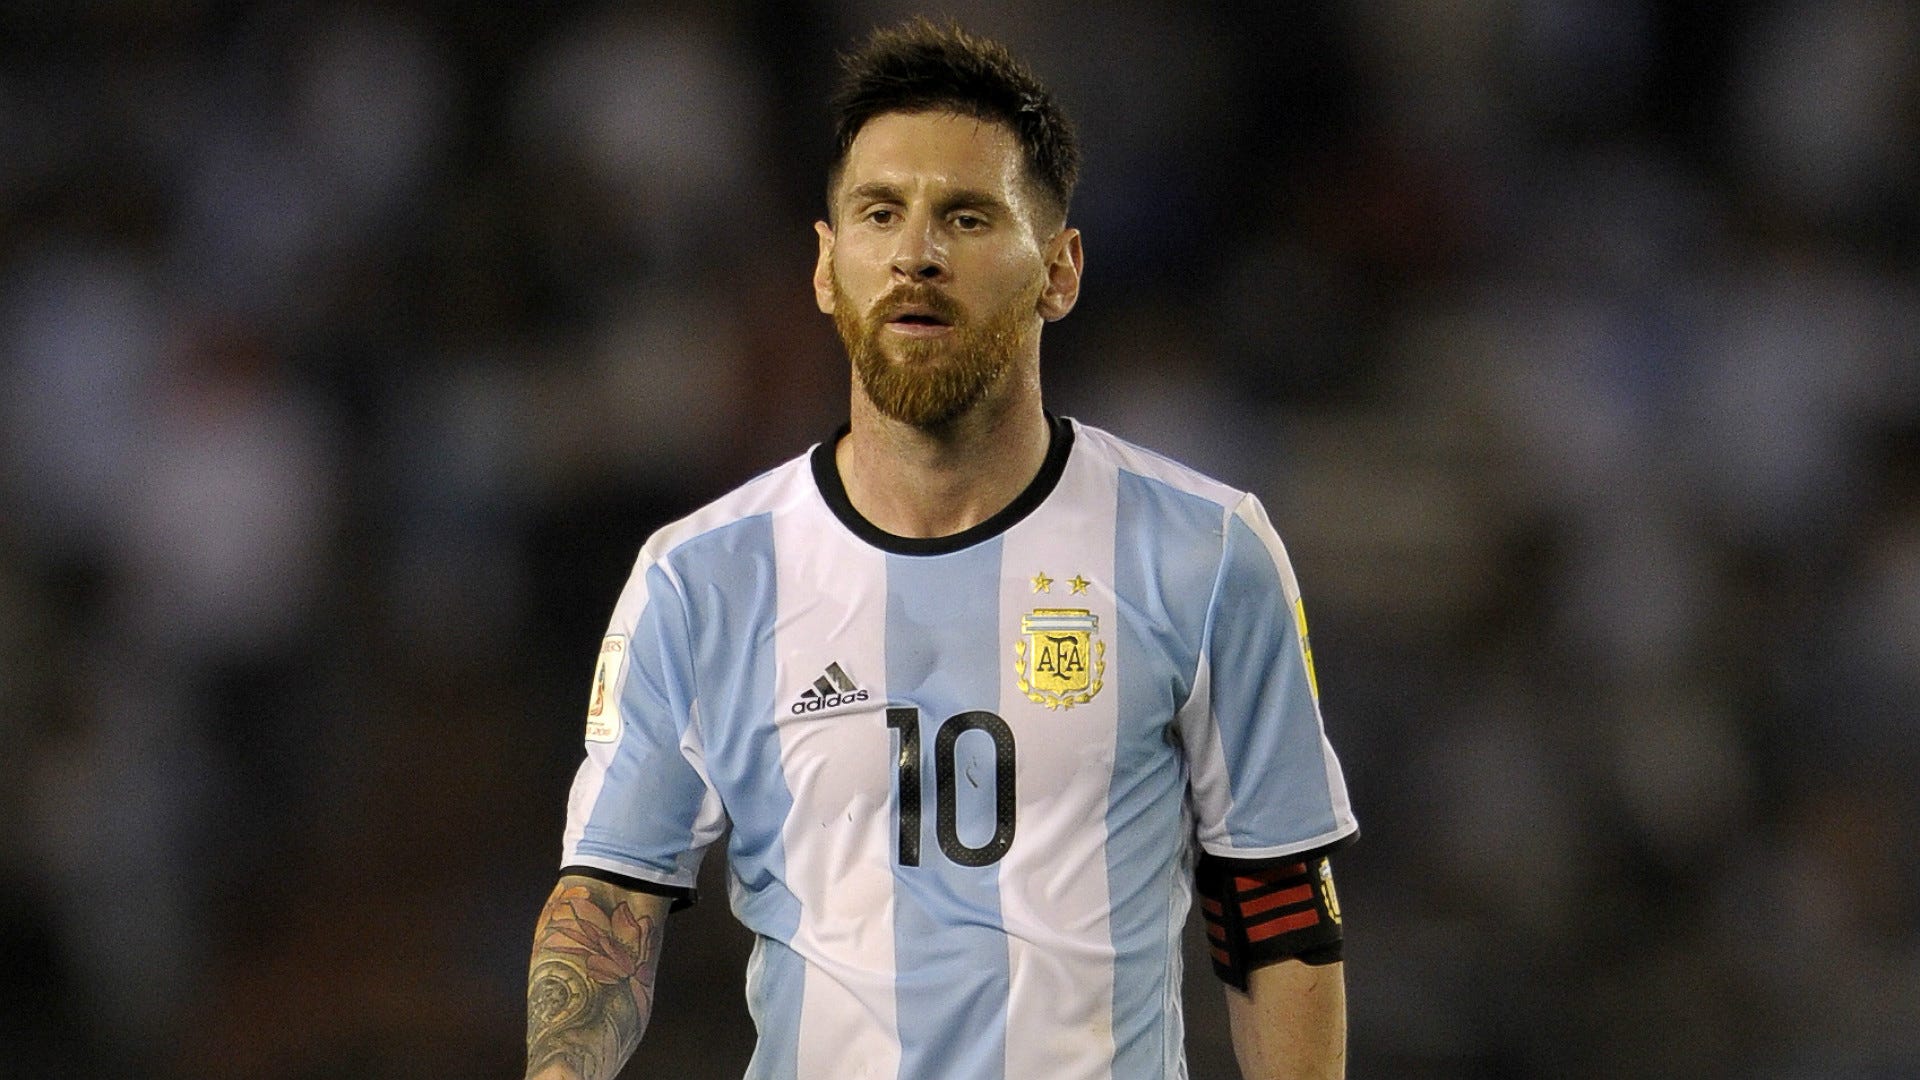 Nếu bạn là fan hâm mộ của Messi, Argentina và AFA, hãy không bỏ lỡ những hình ảnh liên quan đến ngôi sao bóng đá tài năng này. Những bức ảnh đầy sức sống sẽ khiến bạn cảm thấy tràn đầy niềm đam mê với bóng đá.